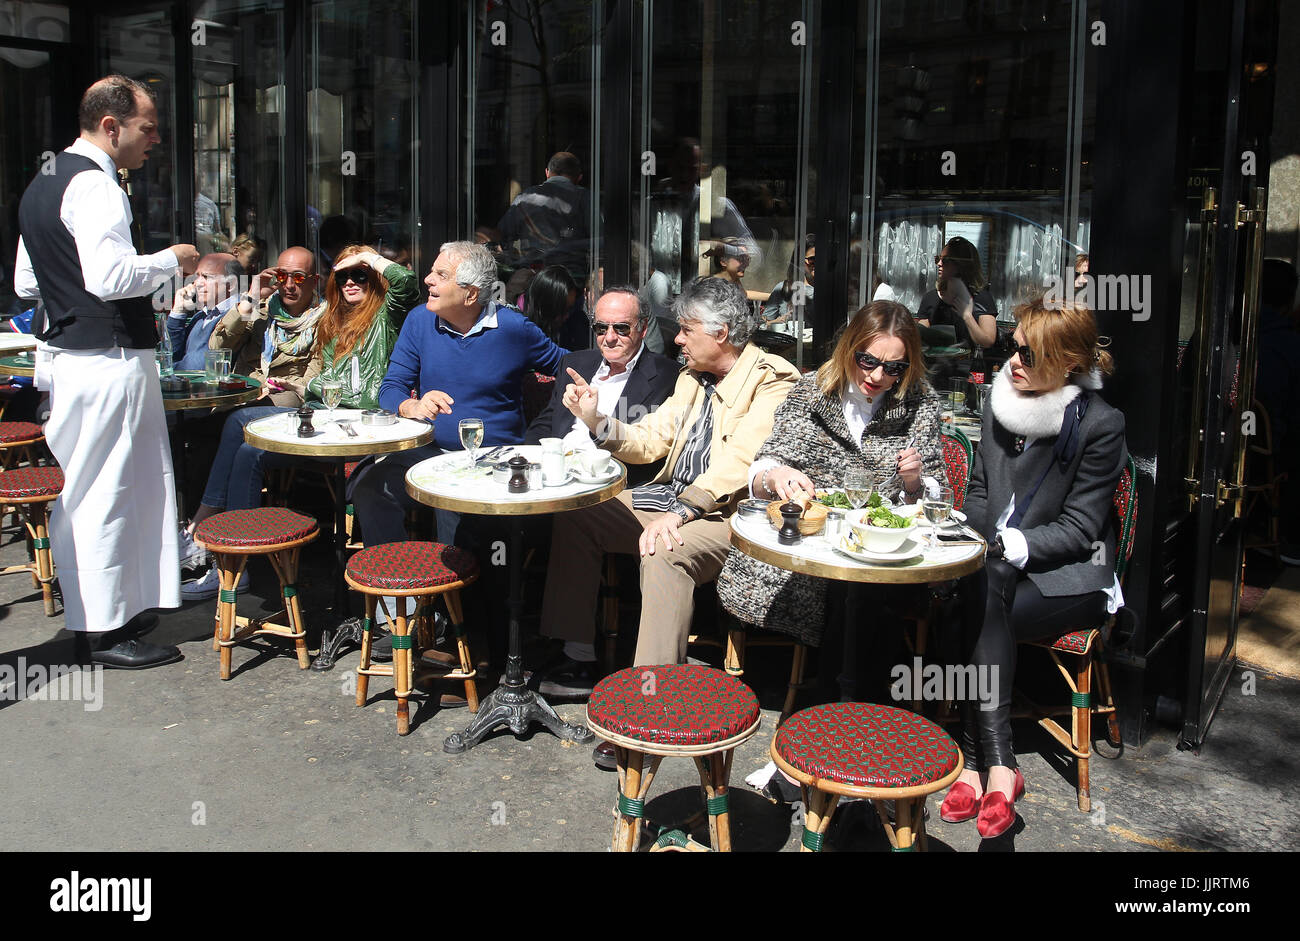 Il Café de Flore è uno dei più antichi coffeehouse di Parigi. Situato sul Boulevard Saint-Germain è un famoso ritrovo di artisti e scrittori. Foto Stock